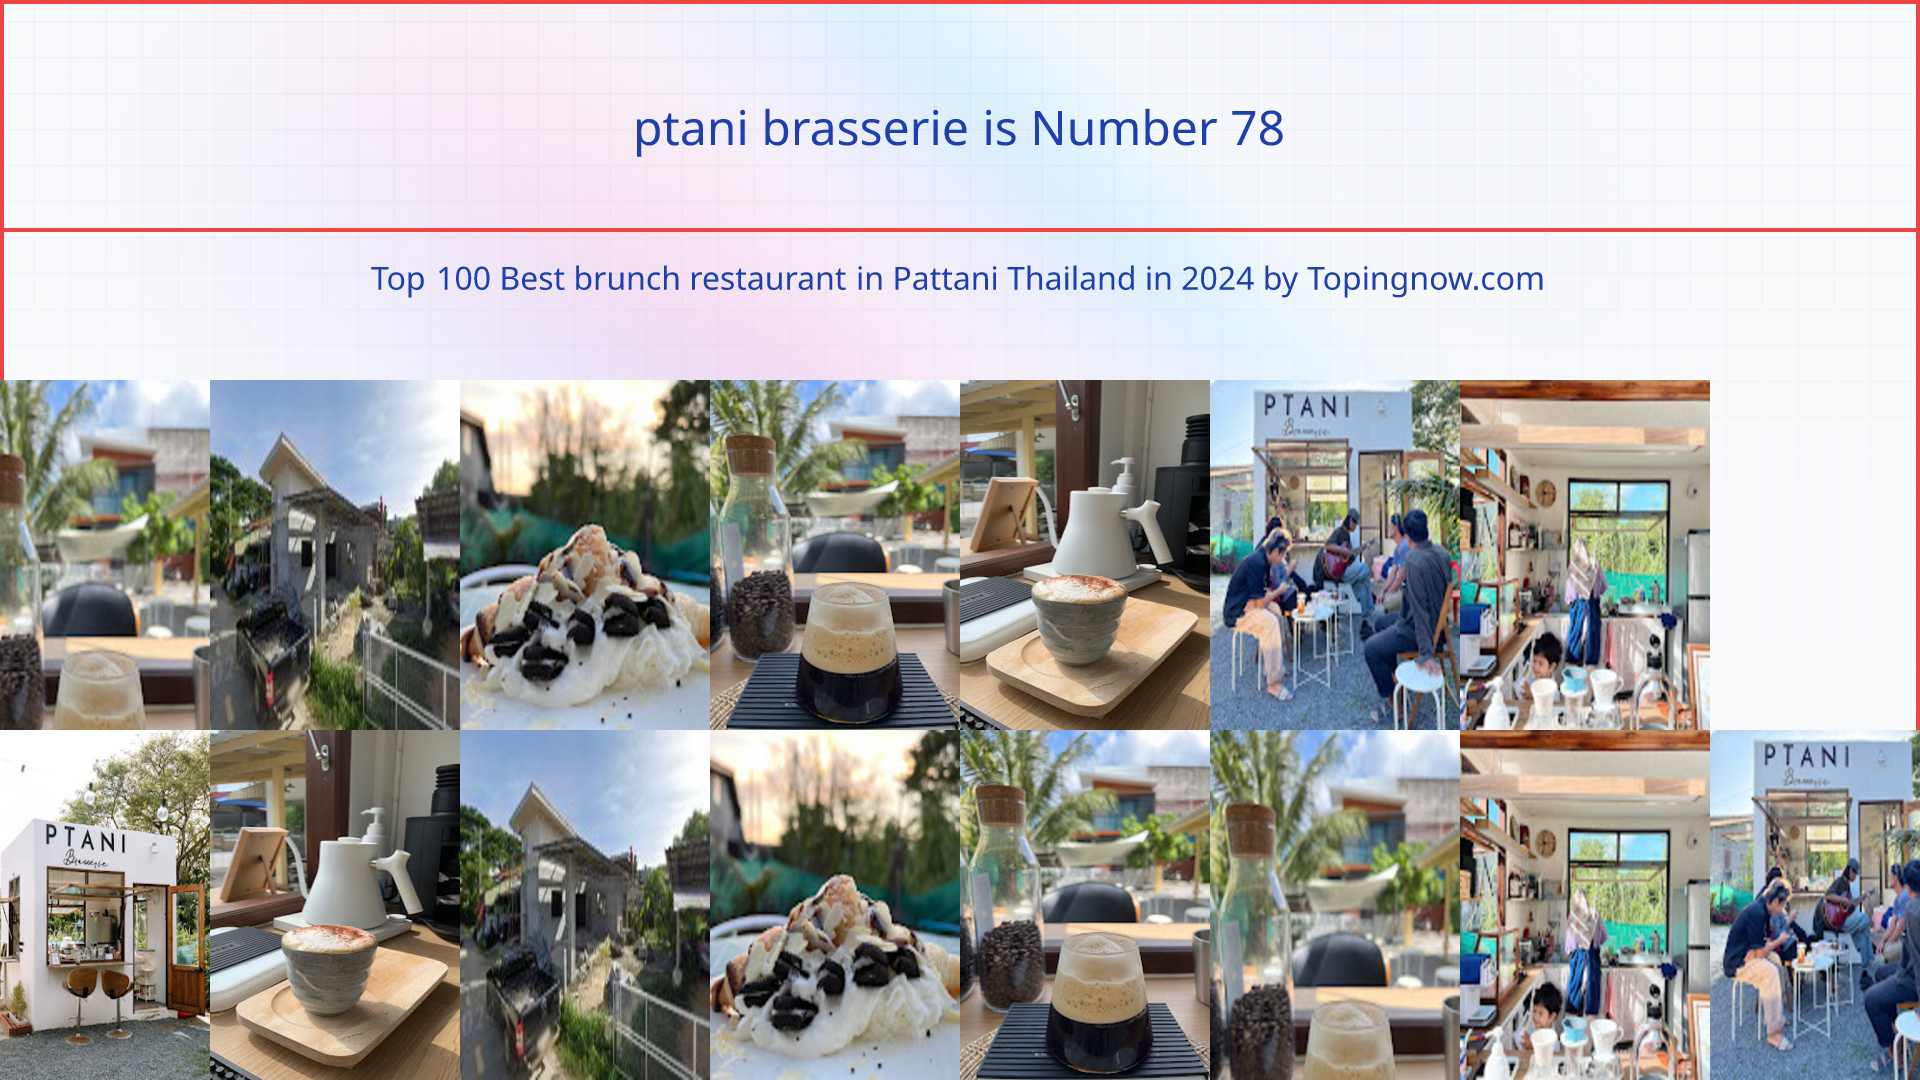 ptani brasserie: Top 100 Best brunch restaurant in Pattani Thailand in 2024